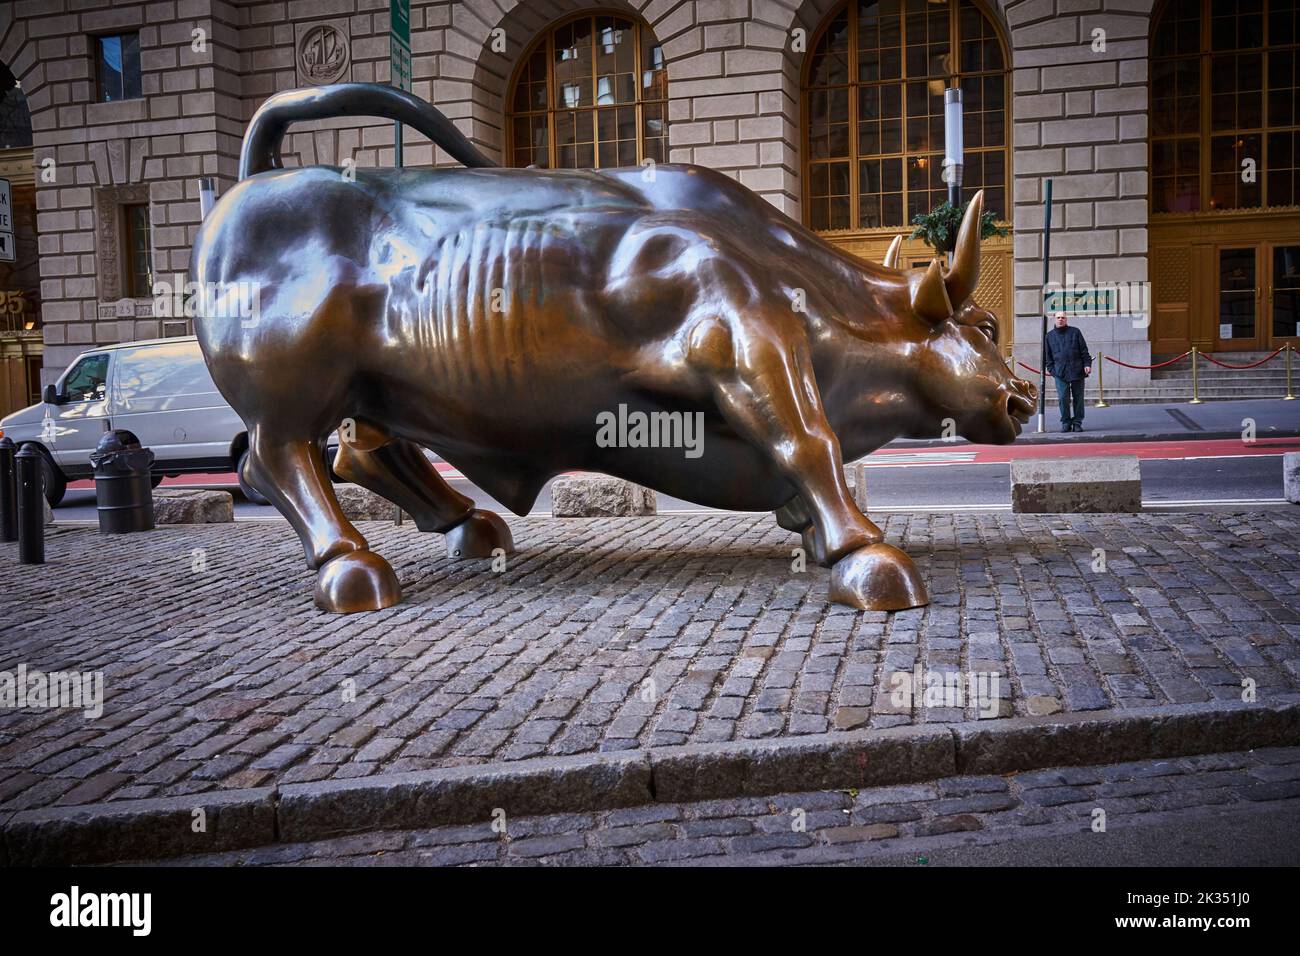 Le chargement de Bull est une destination touristique populaire qui attire des milliers de personnes, symbolisant Wall Street et le quartier financier. Banque D'Images